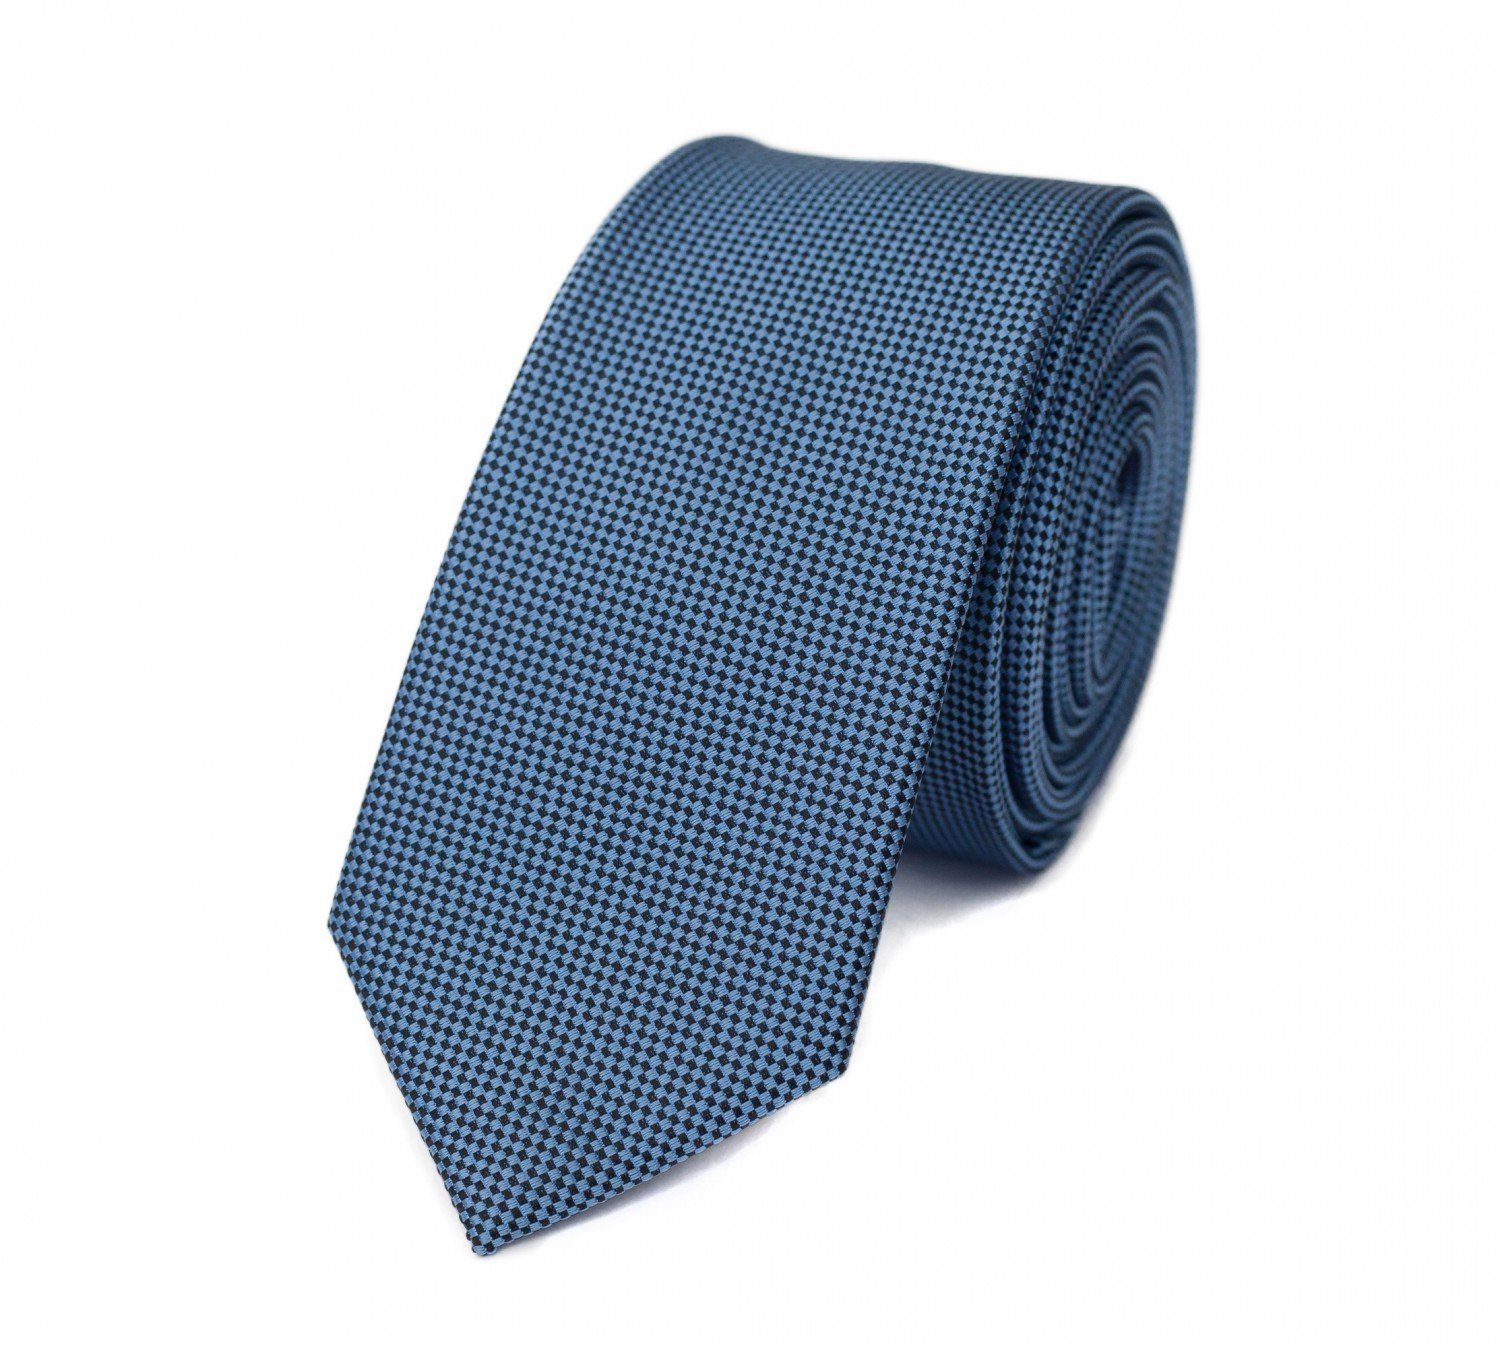 Krawatte Struktur in Blautöne Fabio Cobalt Salts/Black Blau Kariert) - Farini Schwarz Schlipse Box, (6cm), 6cm - Männer Krawatten Schmal Herren (ohne klassische